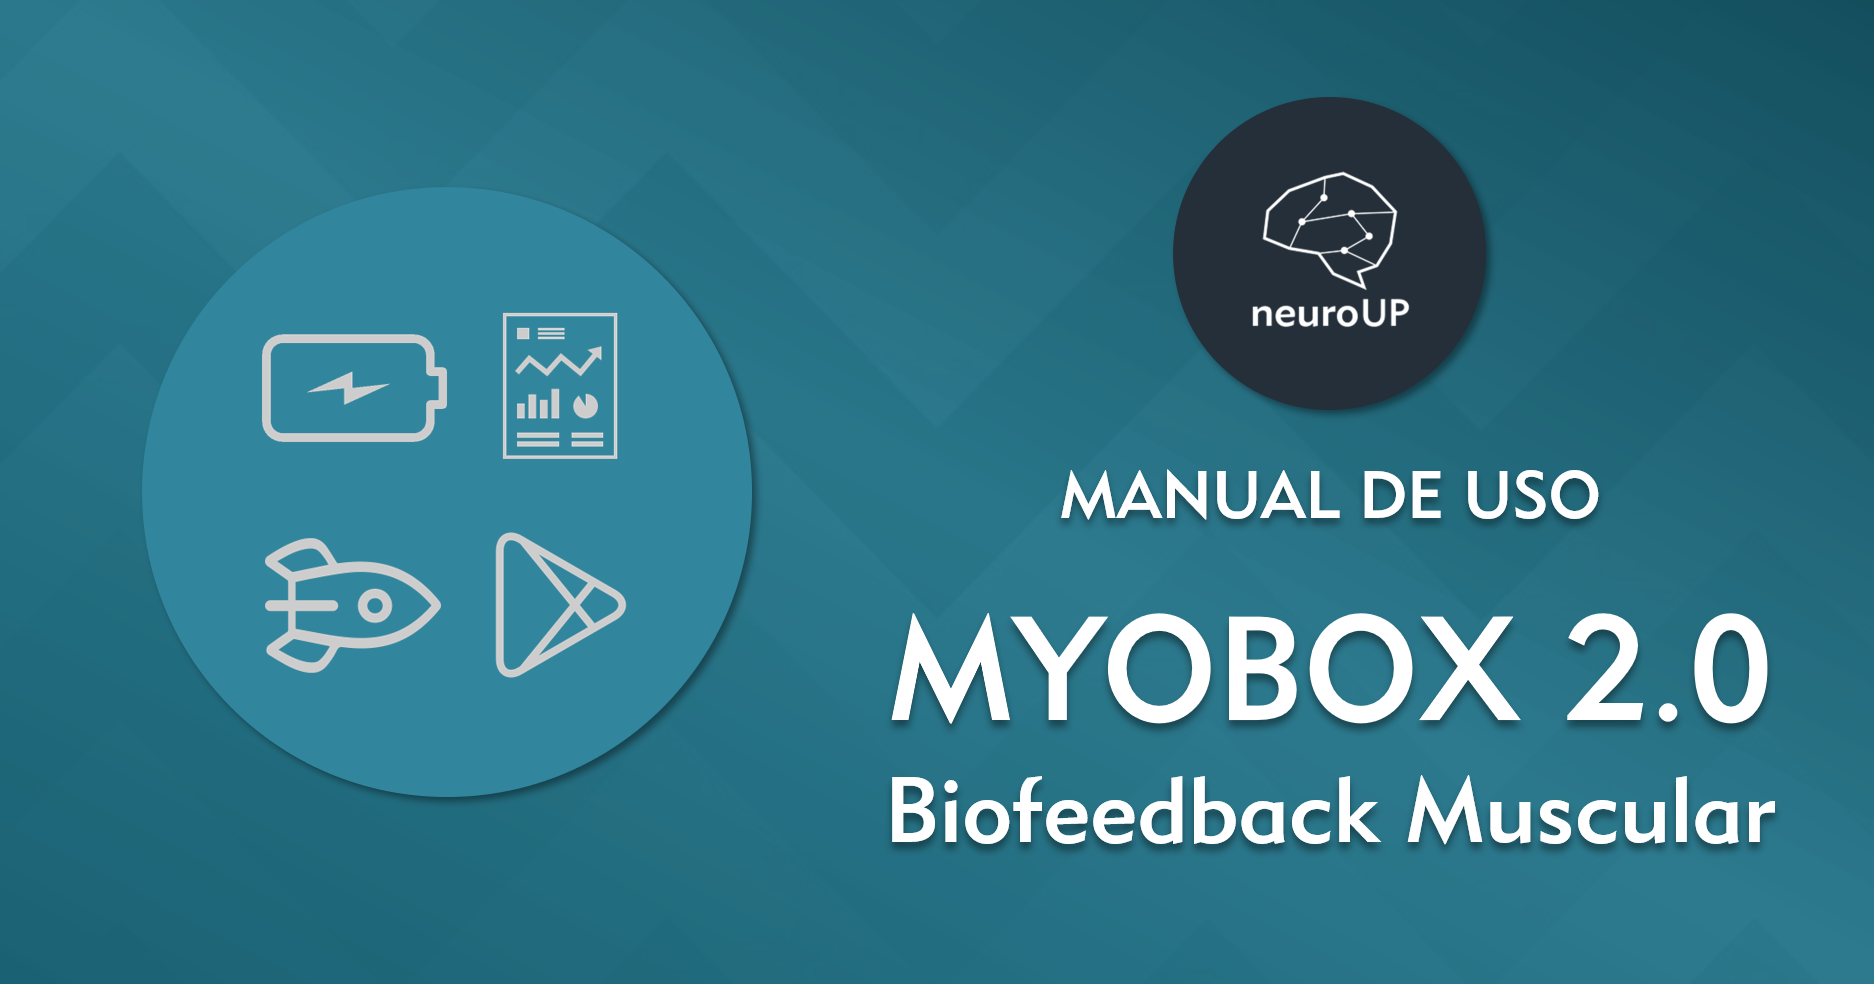 Primeiros passos com o Biofeedback muscular Myobox 2.0